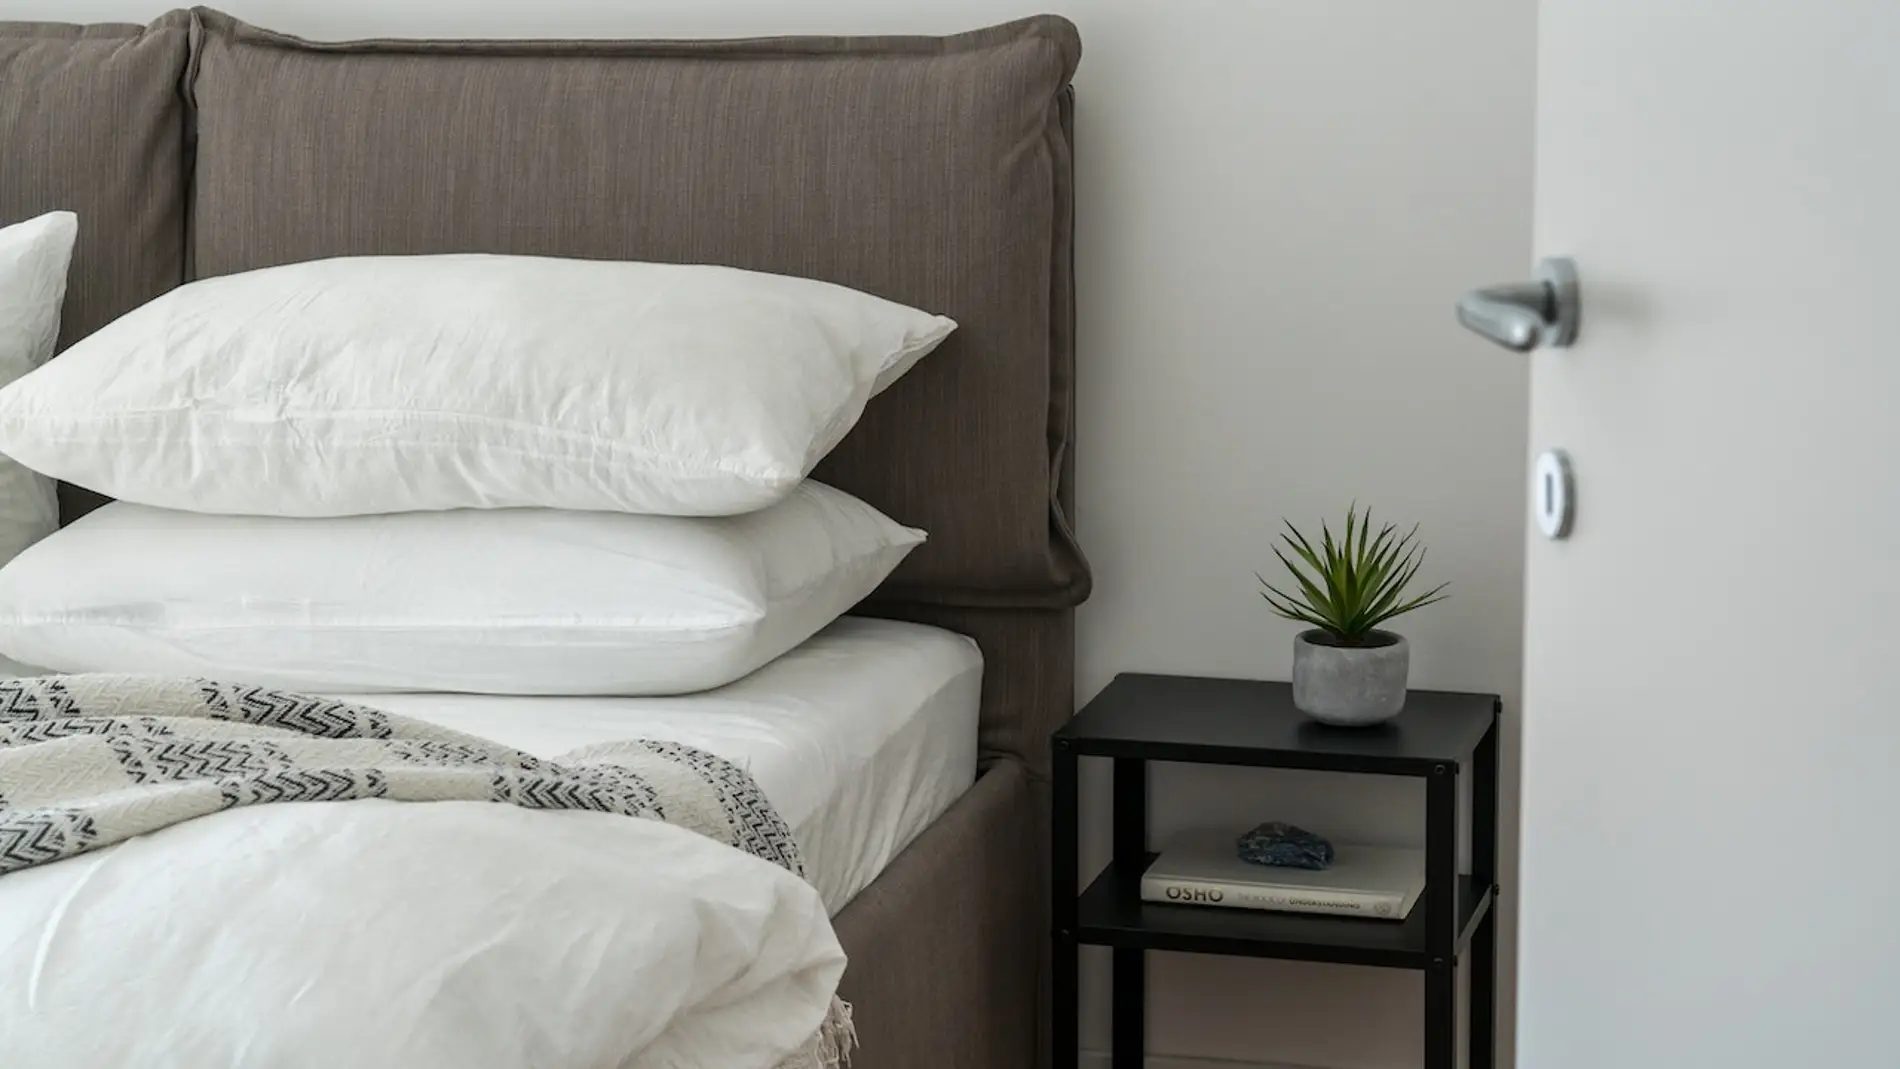 El truco infalible para blanquear sábanas y amarillas en casa | Onda Cero